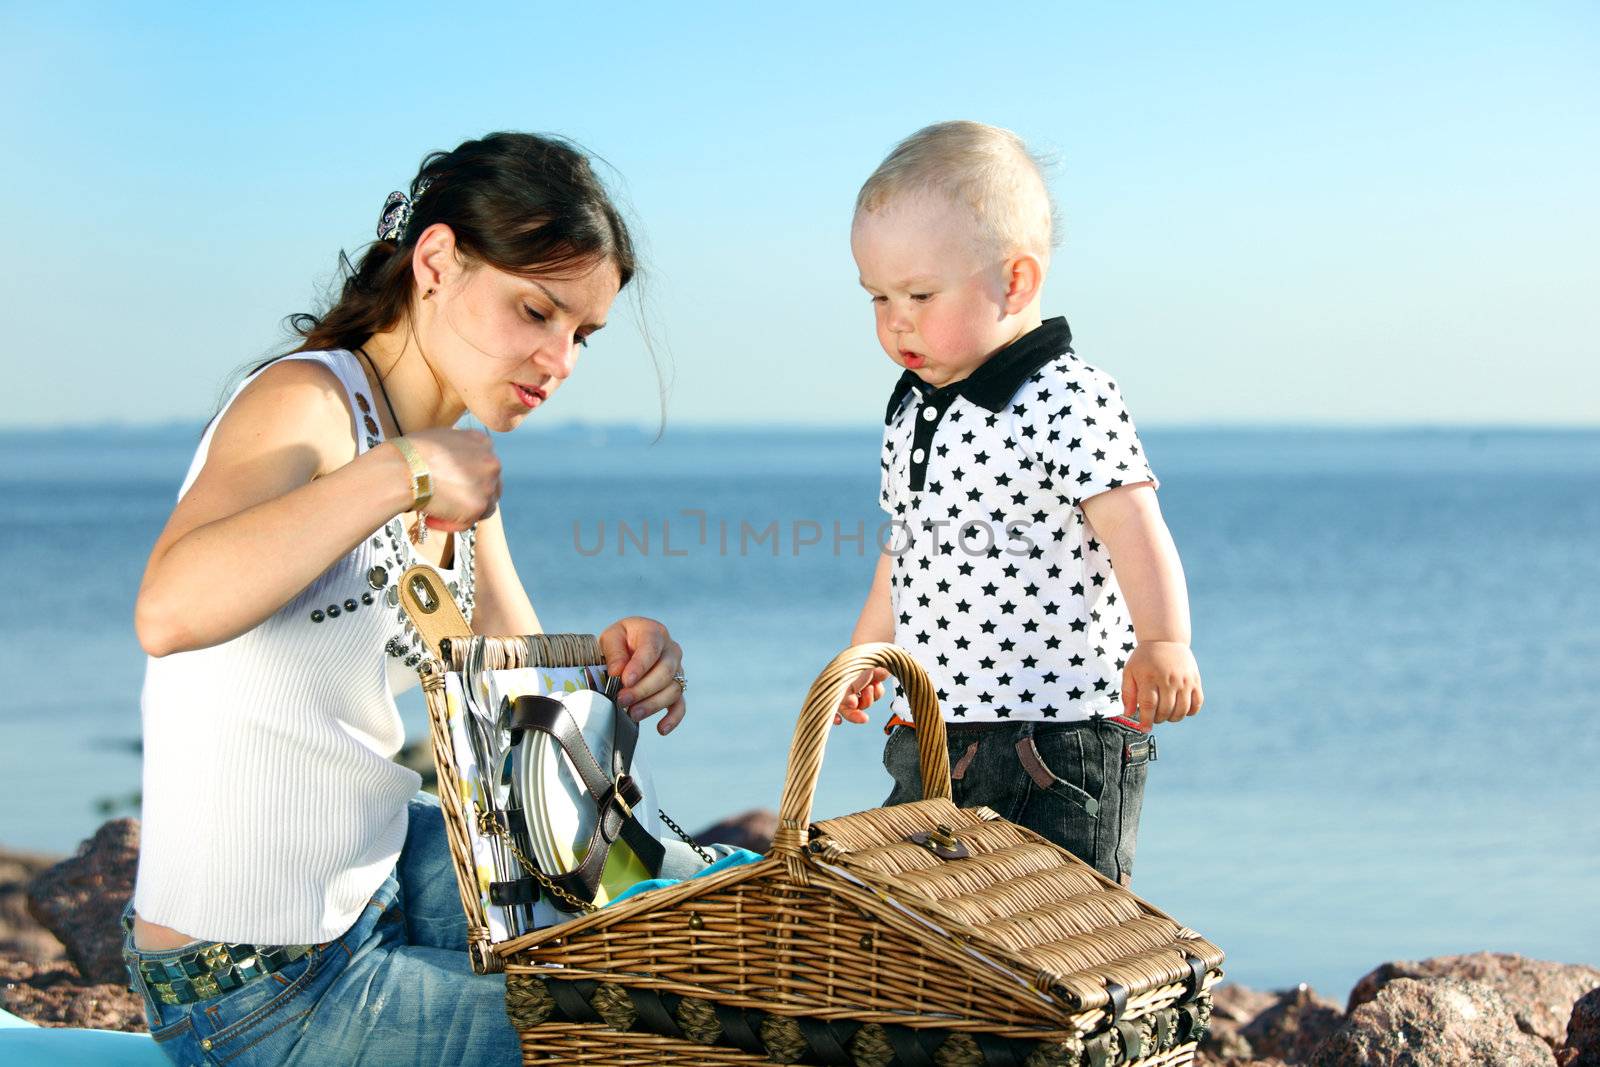 picnic of happy family near sea